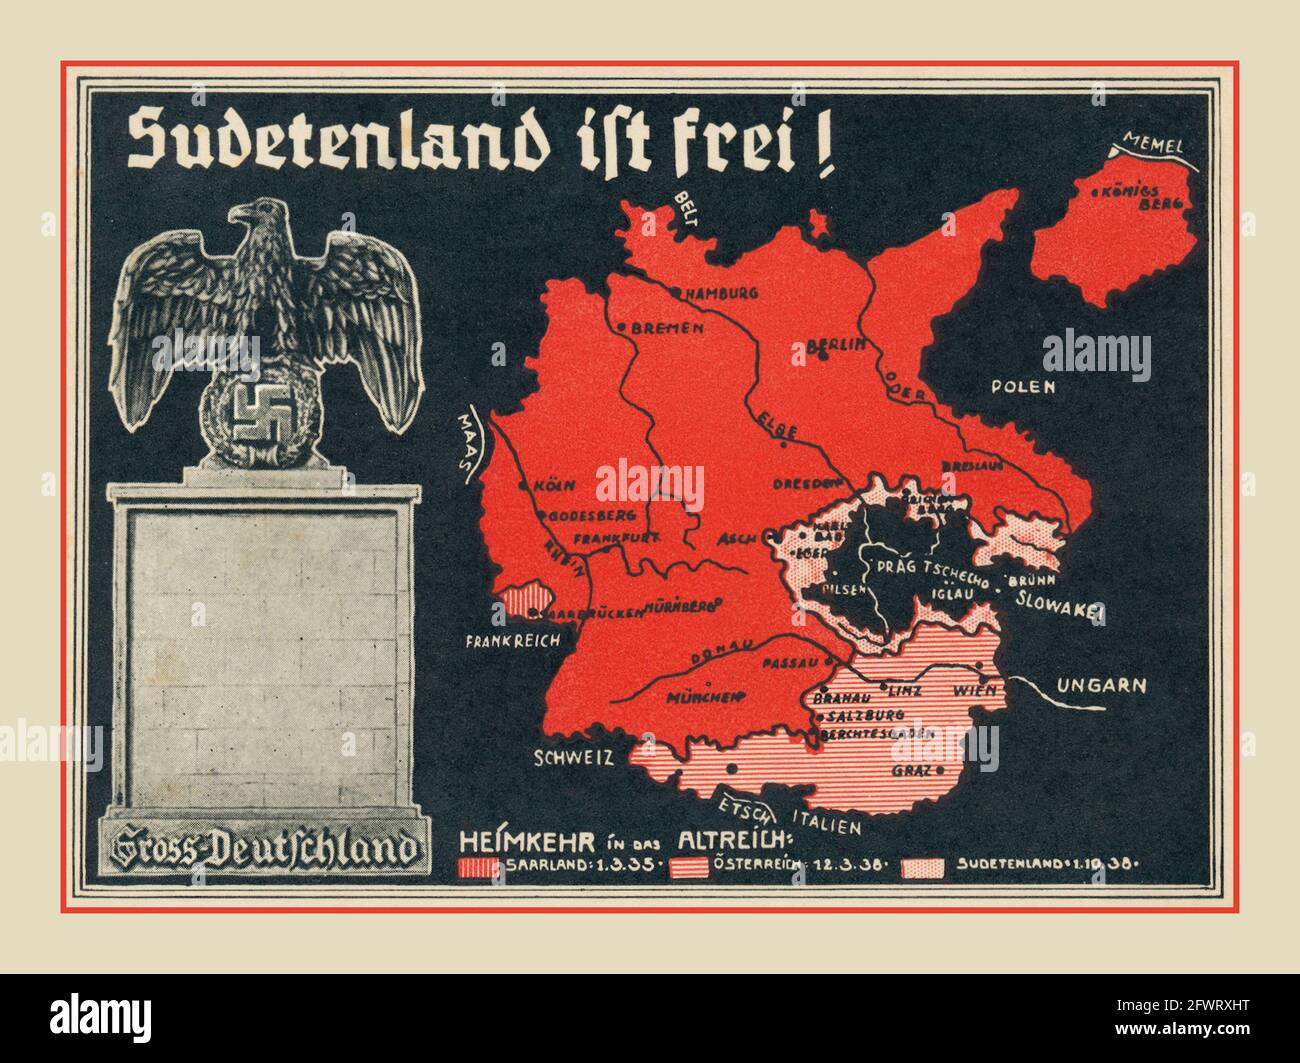 'Sudetenland is free' propagande ' ift frei ' avec Carte d'une grande Allemagne Anschluss propagande nazie des années 1930 affiche Carte BRUTE DEUTSCHLAND avec l'aigle allemand et le symbole Swastika Banque D'Images